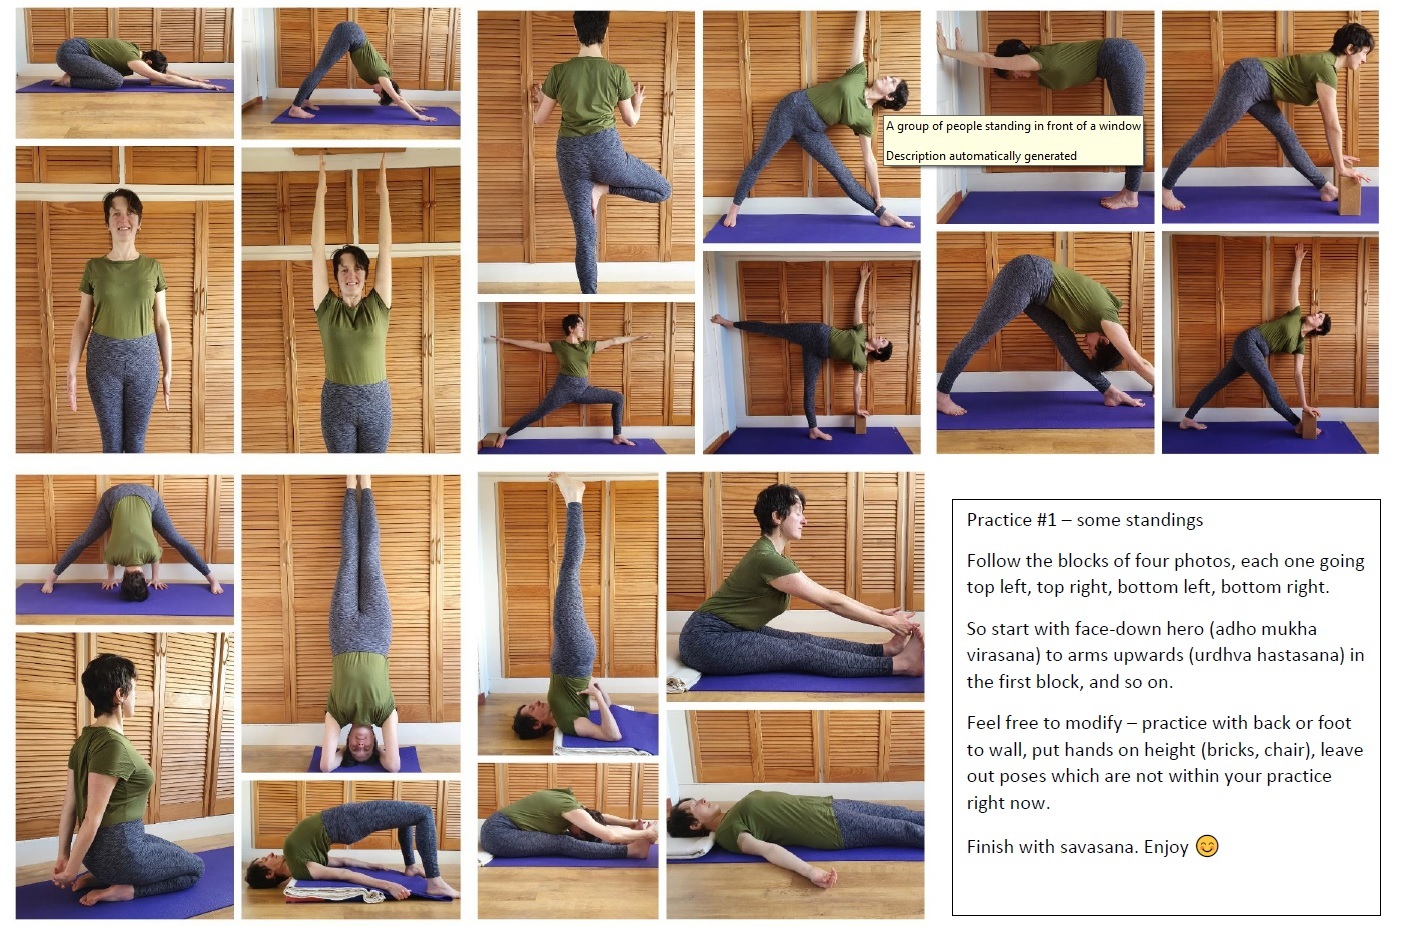 free printable yoga poses chart - FREE Printable.ORG